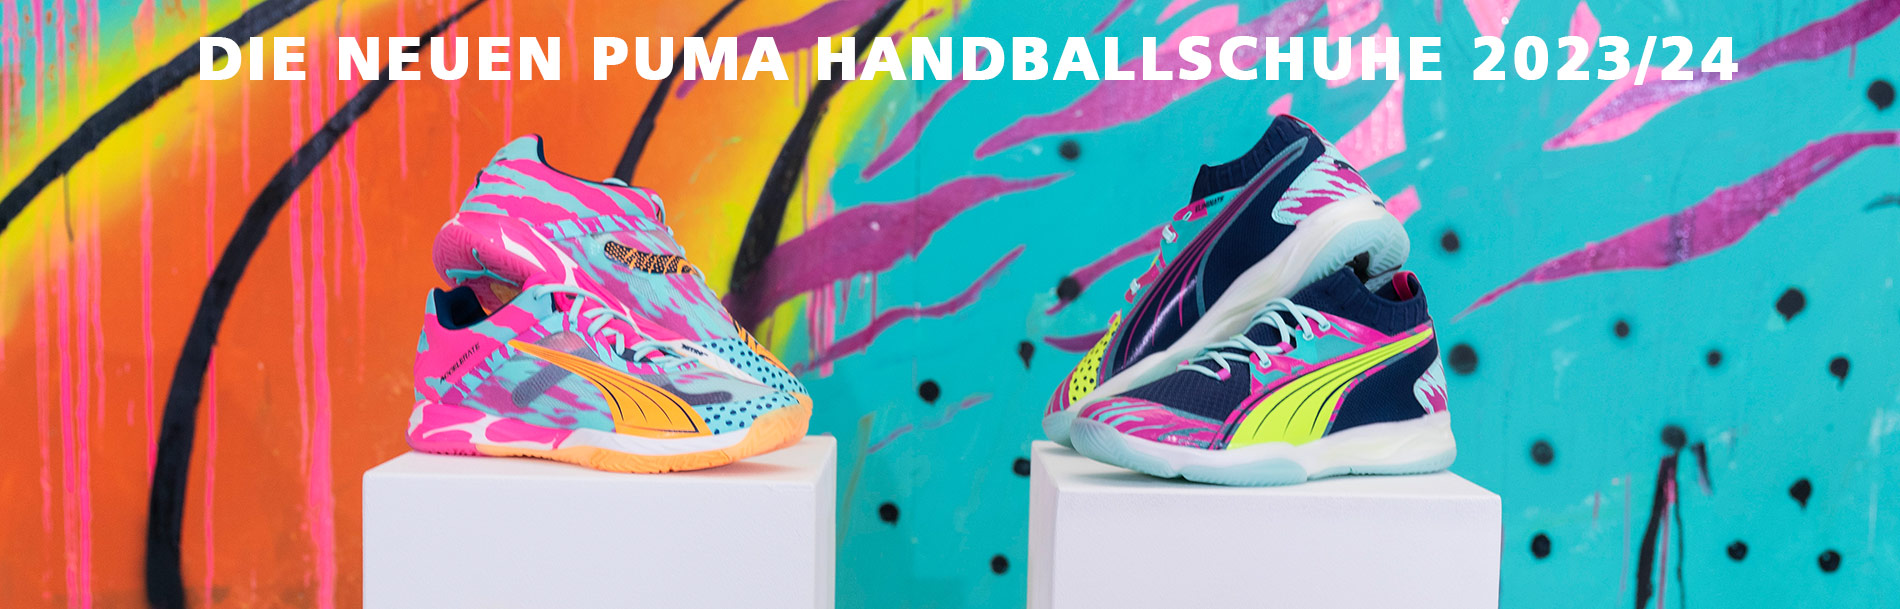 Puma Handballschuhe 2023 kaufen Handball-Markt